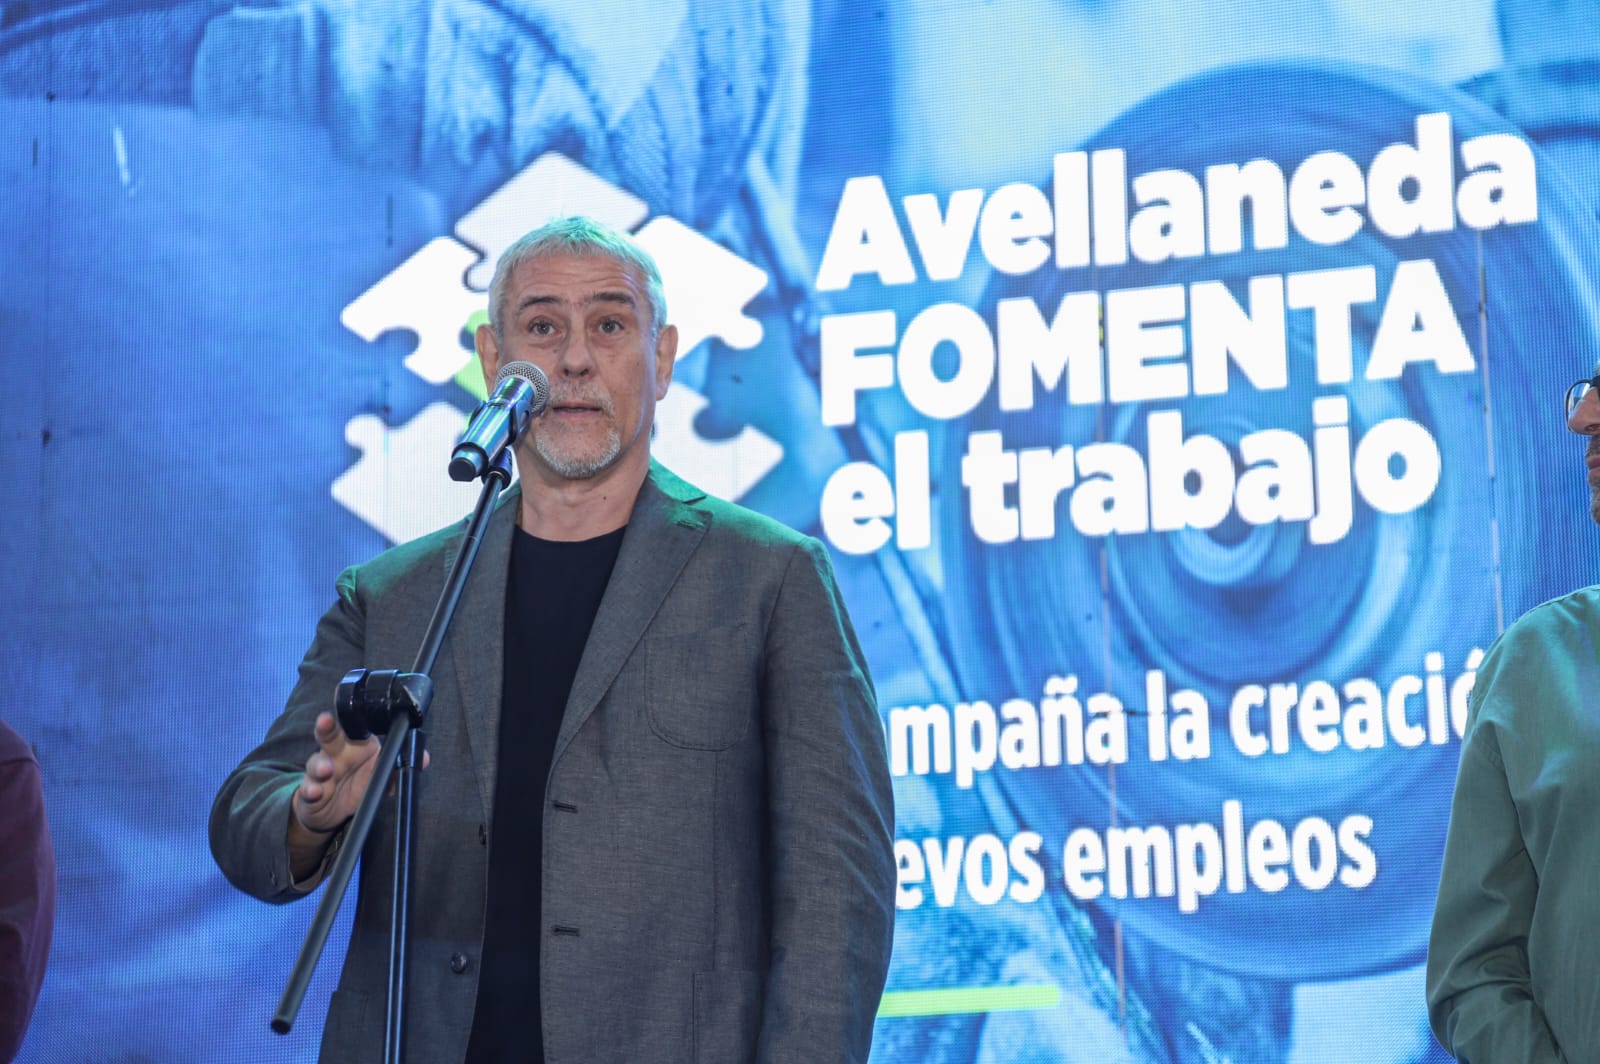 Ferraresi lanzó el programa “Avellaneda fomenta el trabajo” para crear 1000 empleos en el sector privado